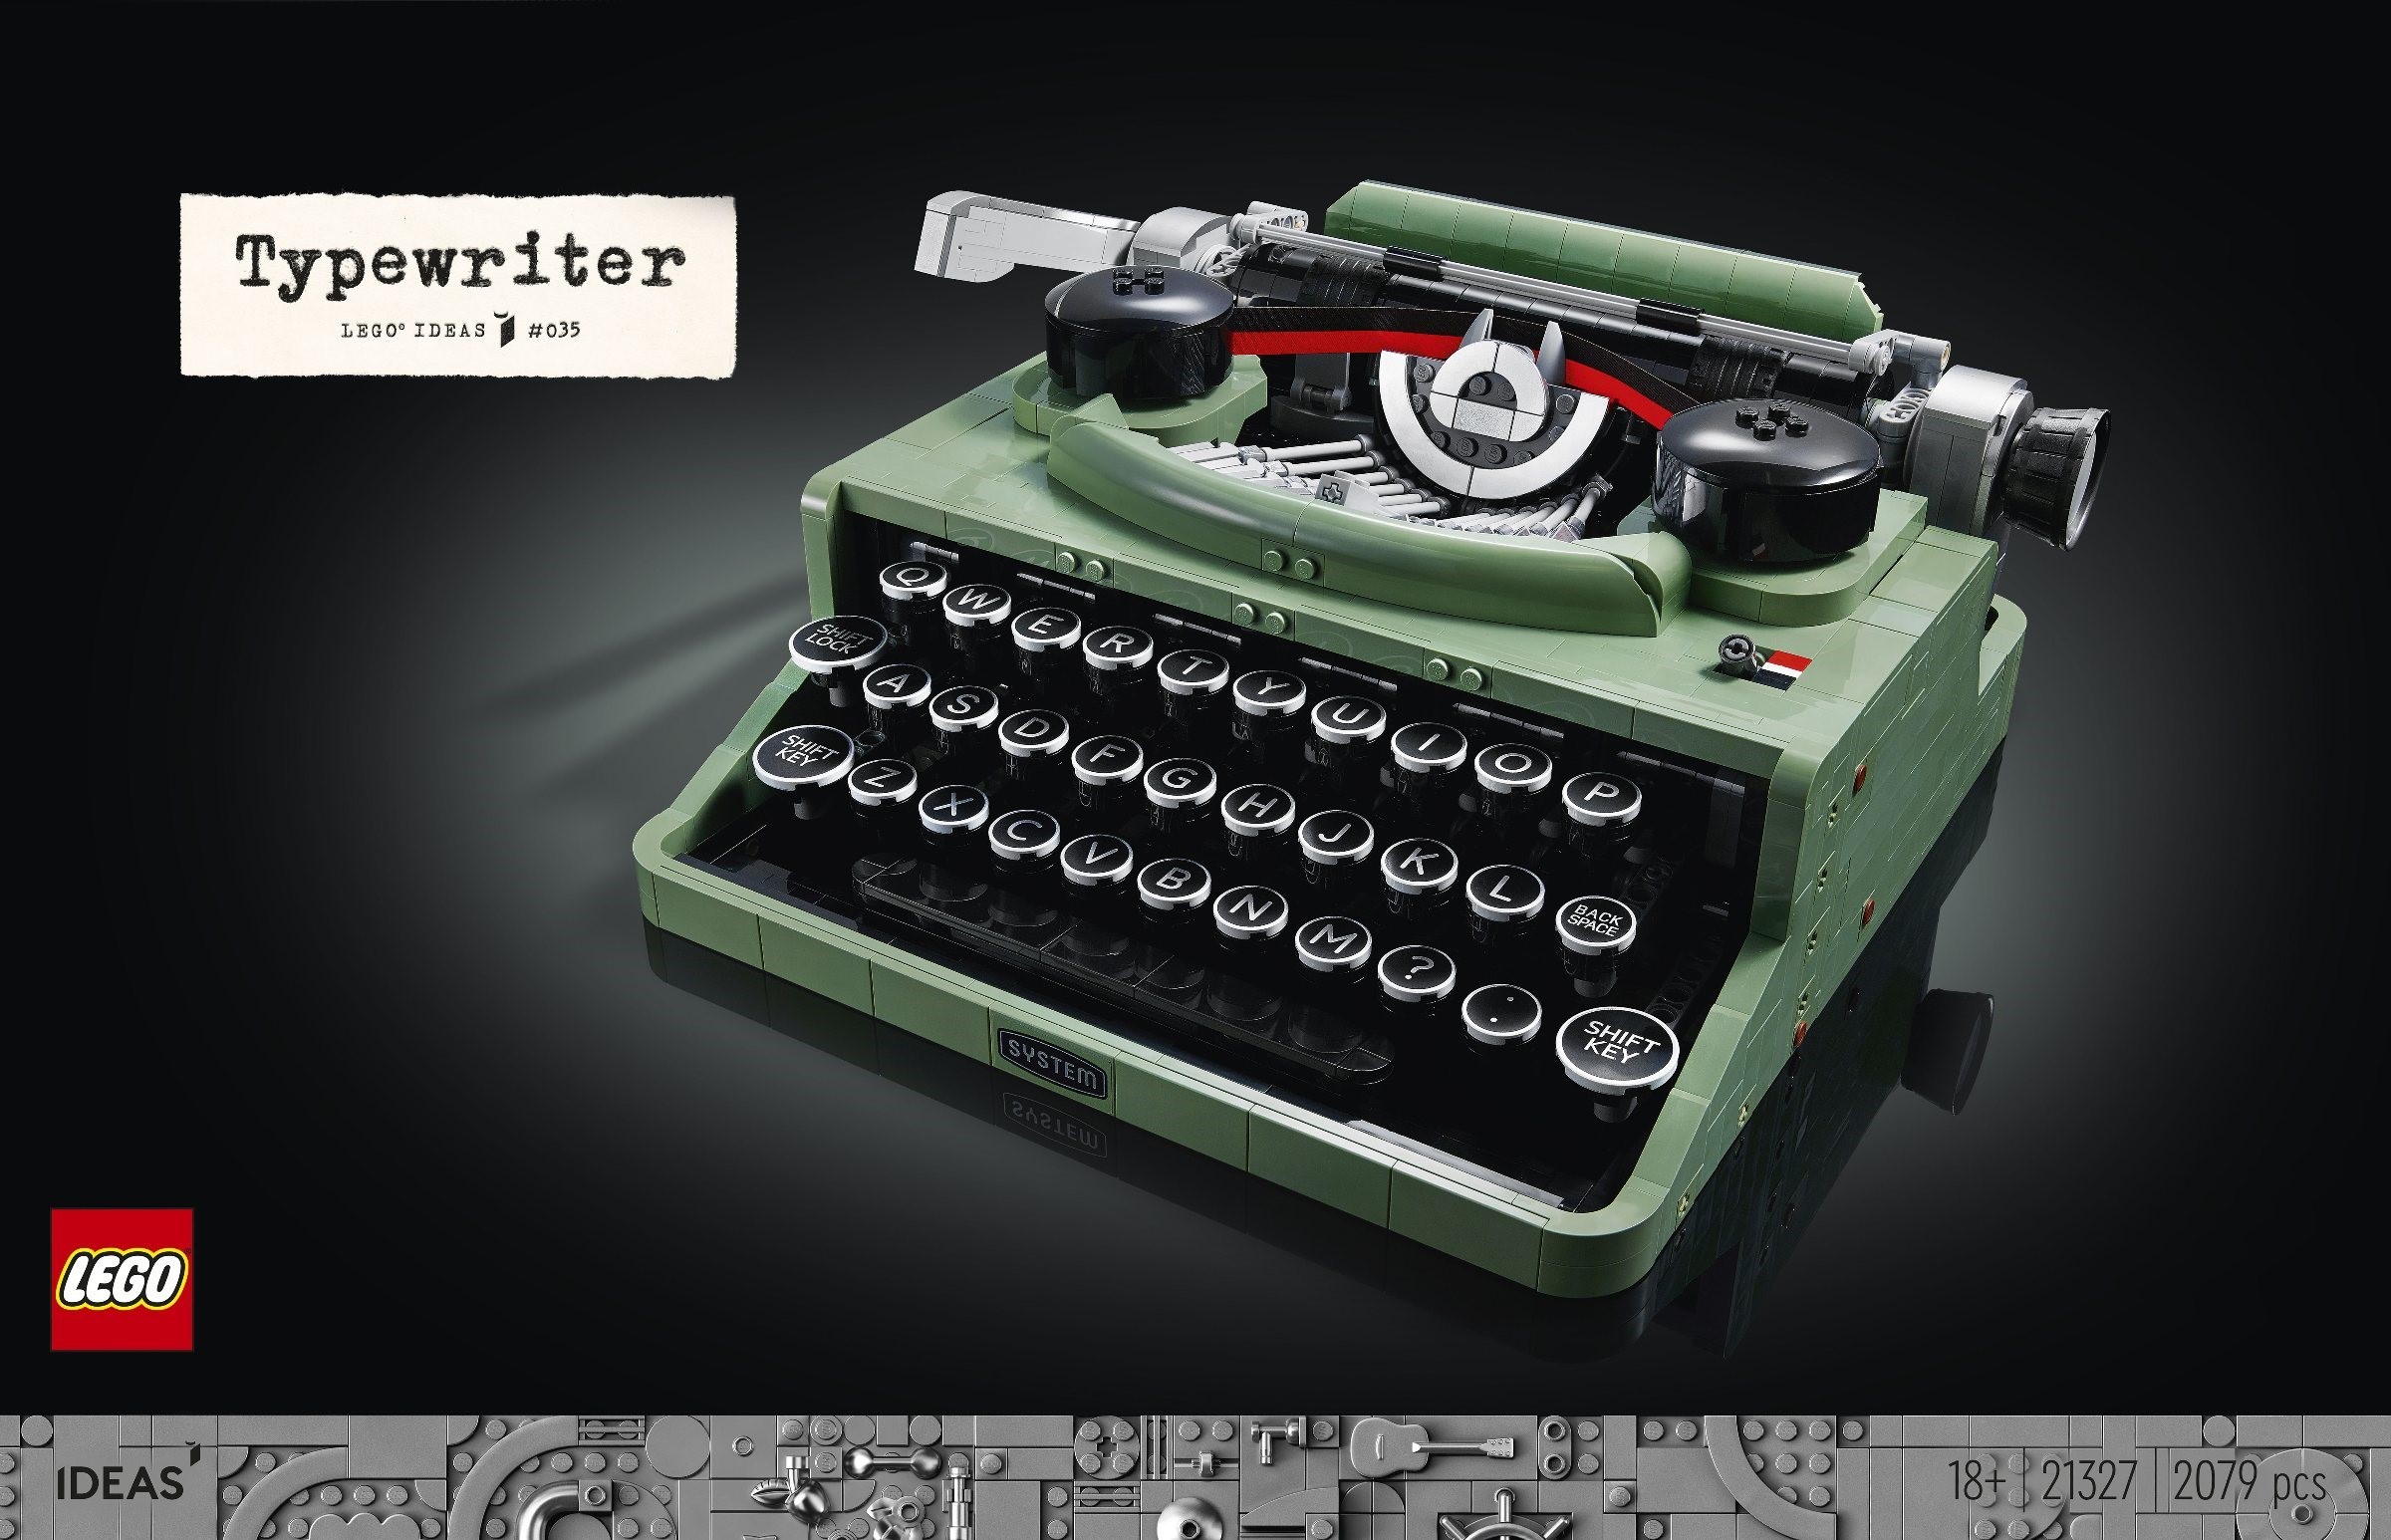 LEGO 21327 Typewriter review | Brickset